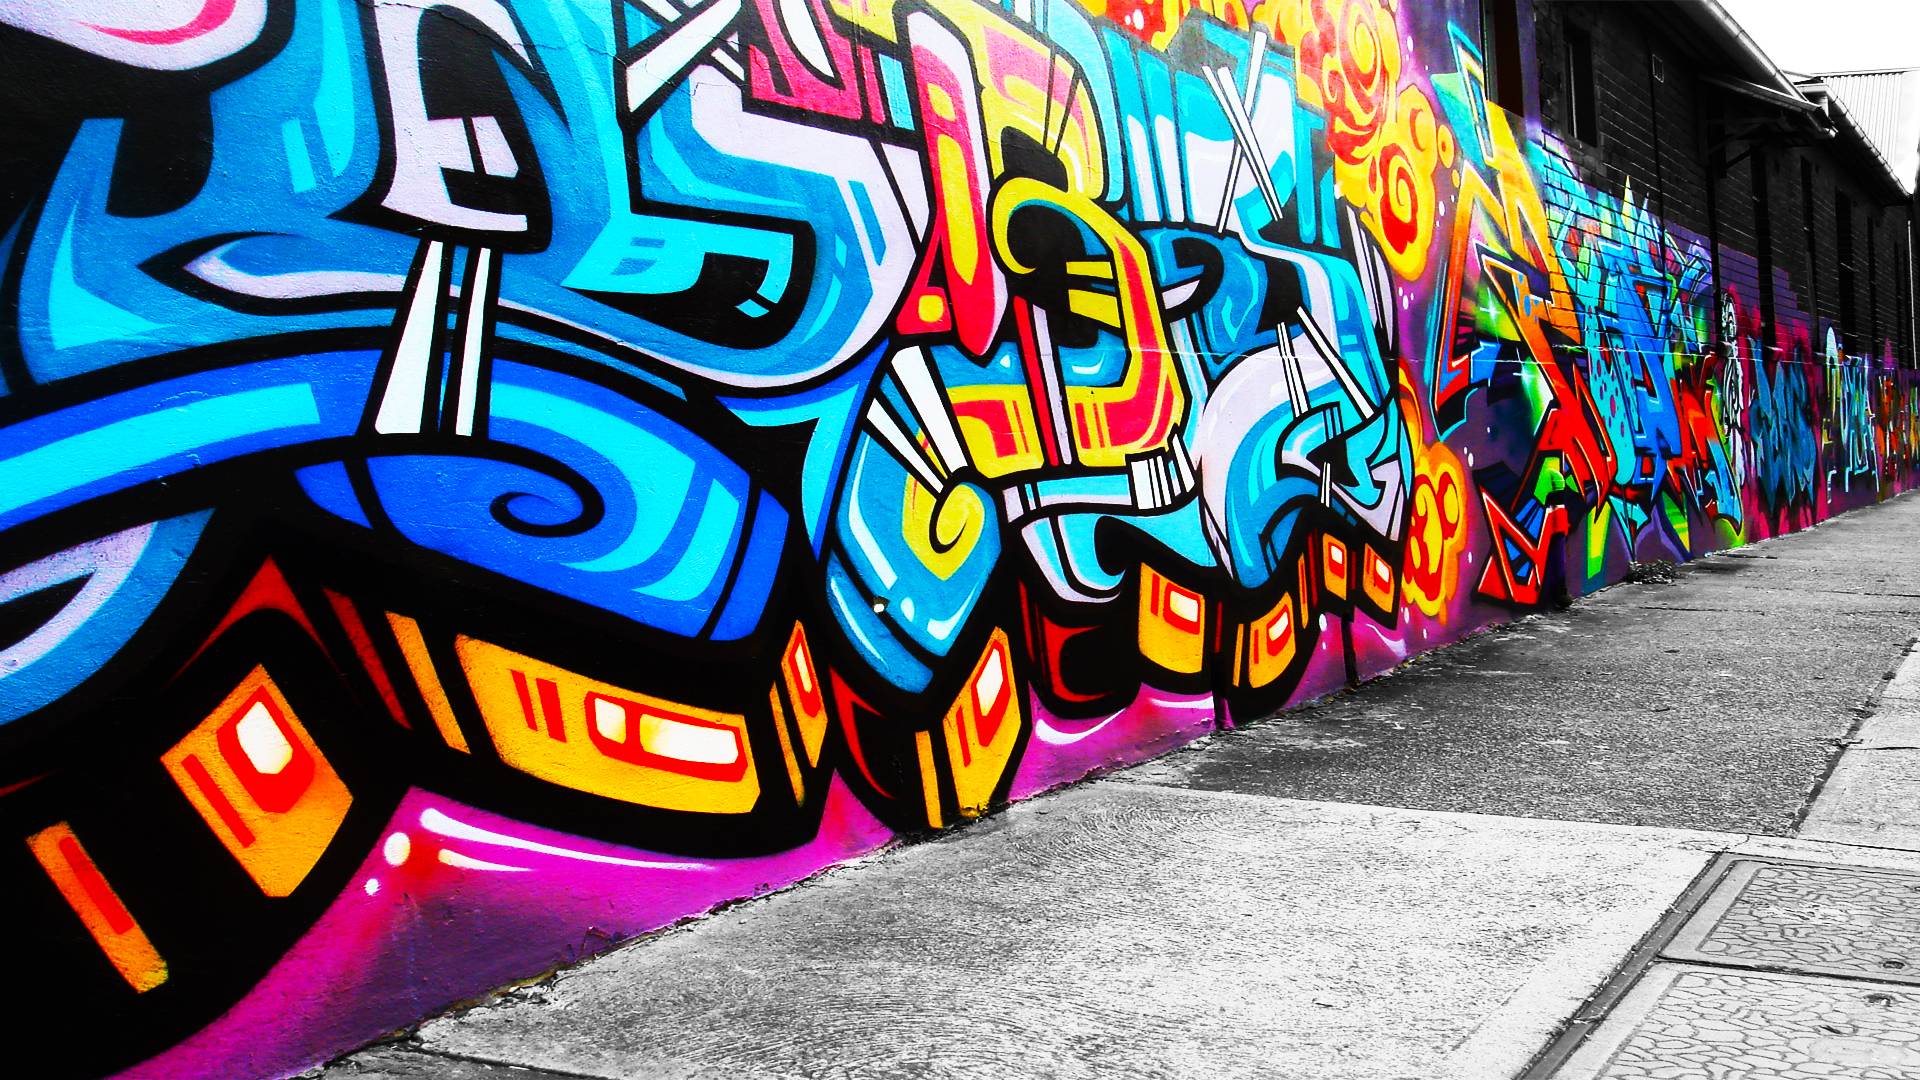 Cool Graffiti Wallpaper Best Download Graffiti Wallpaper Free